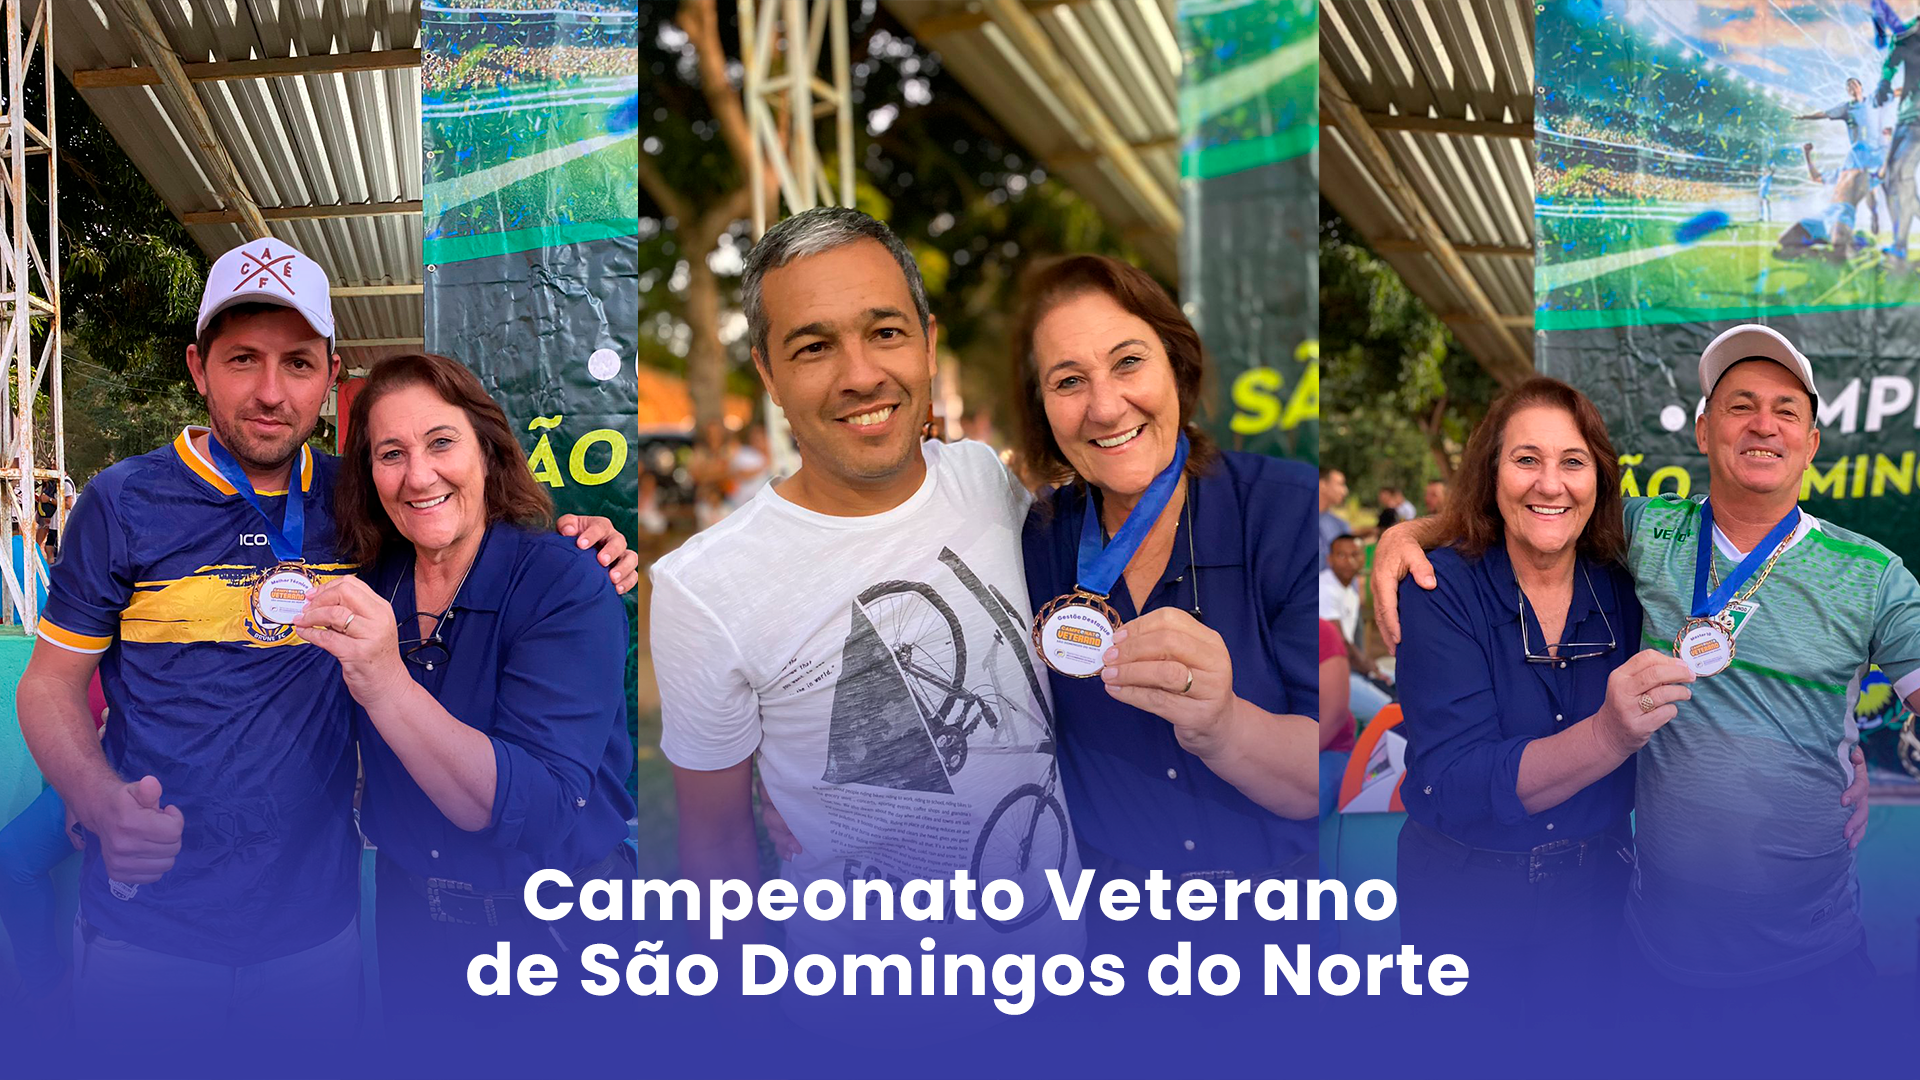 Campeonato Veterano de São Domingos do Norte